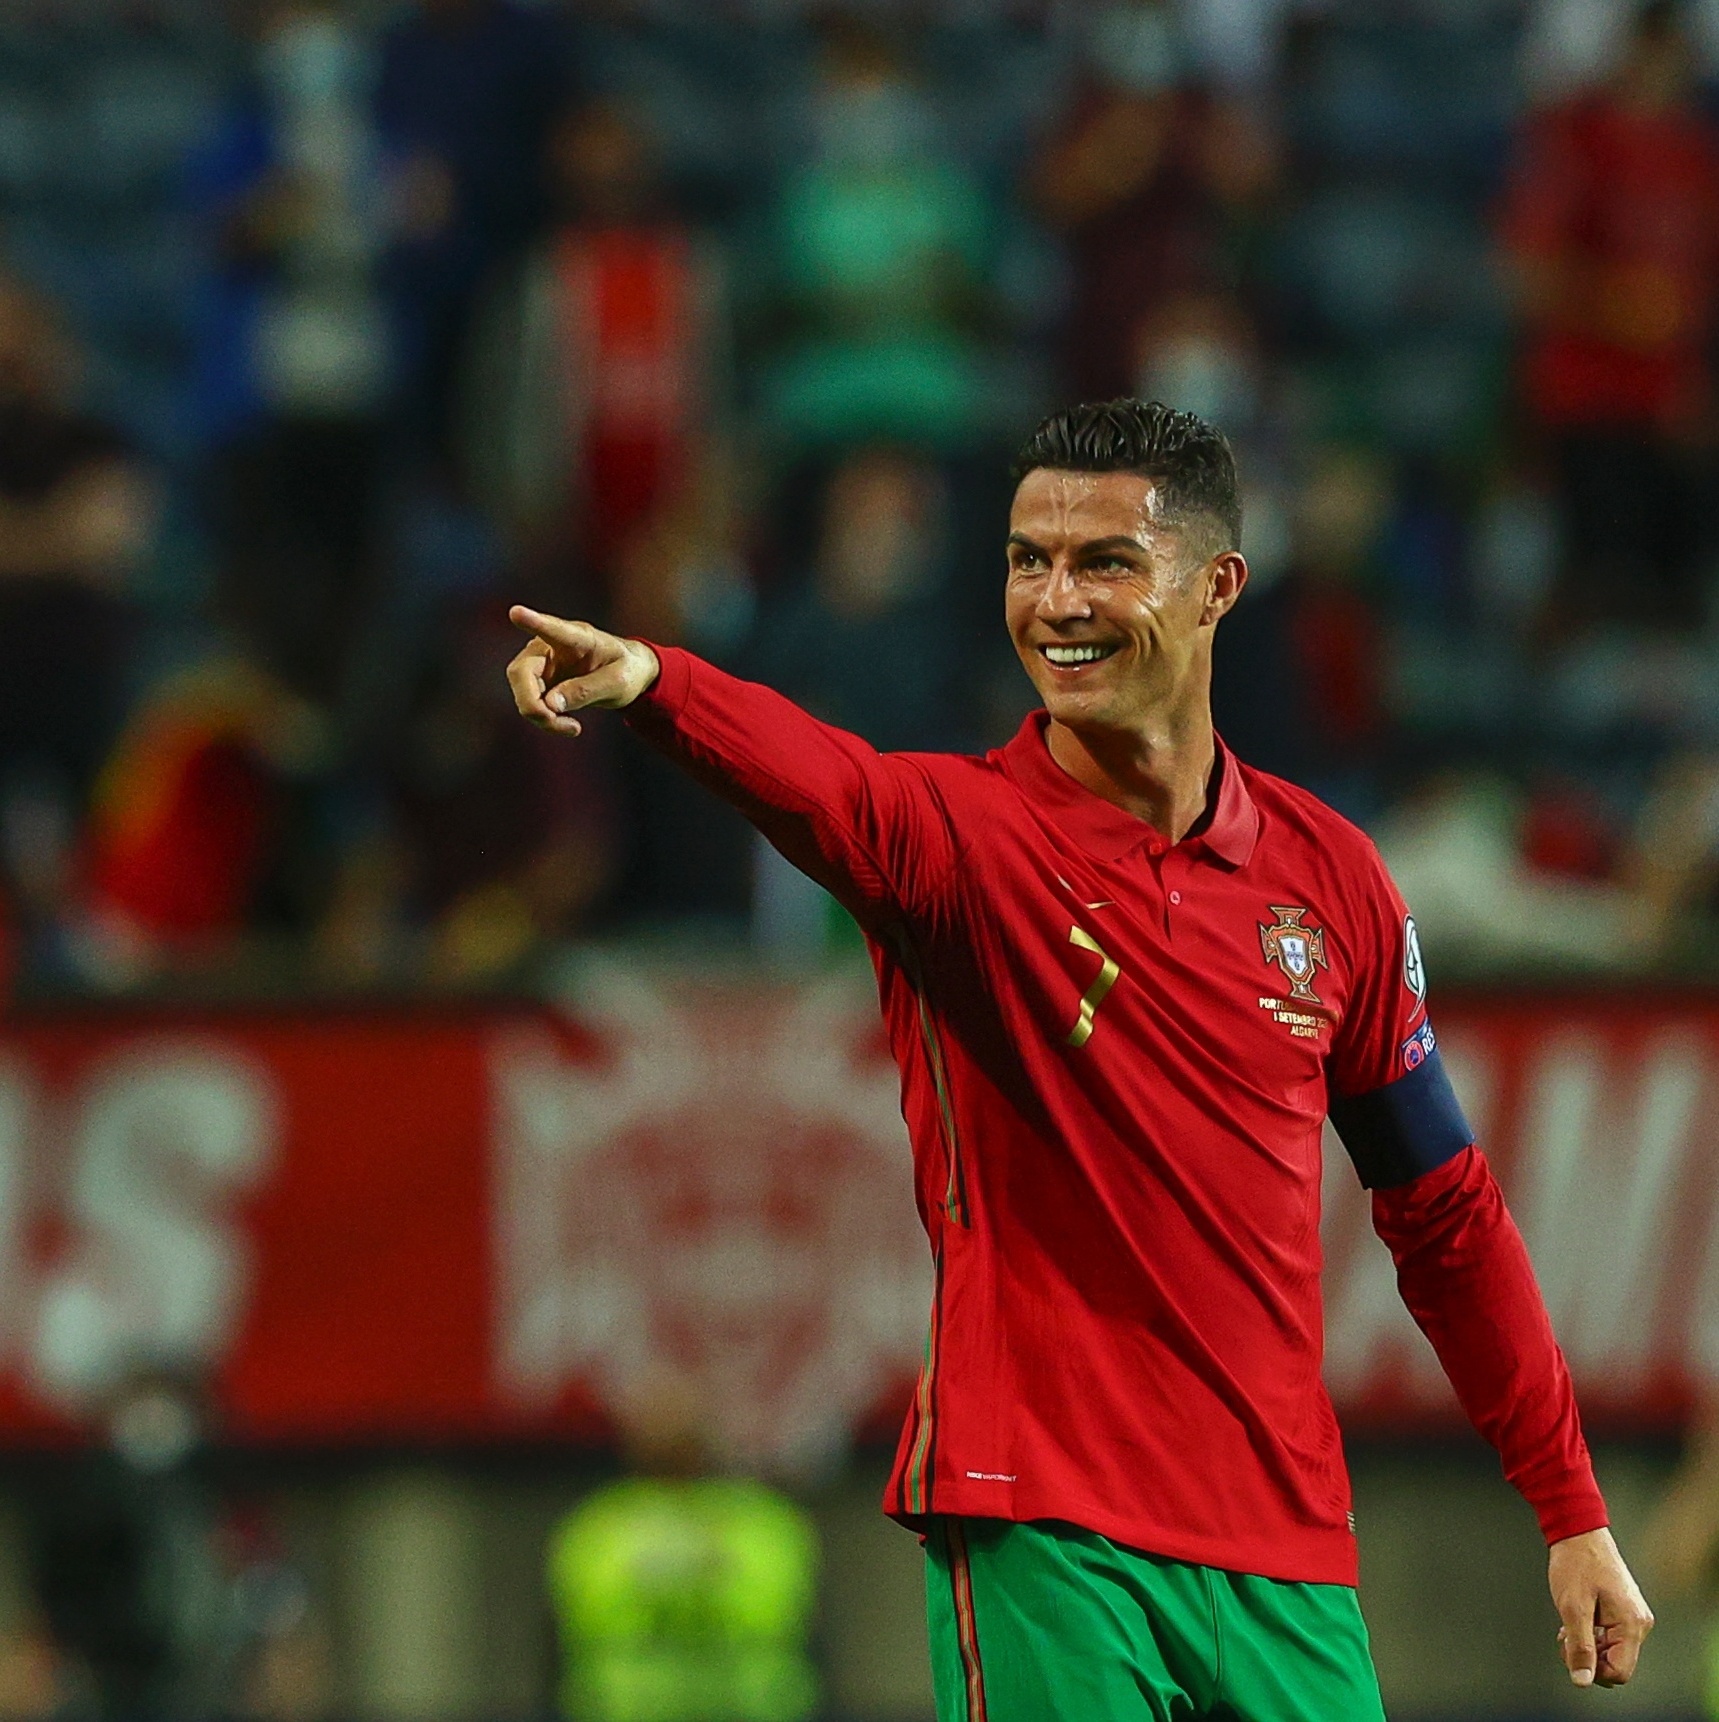 Profecia da Eurocopa“ coloca Portugal como campeão da Copa do Mundo de 2022